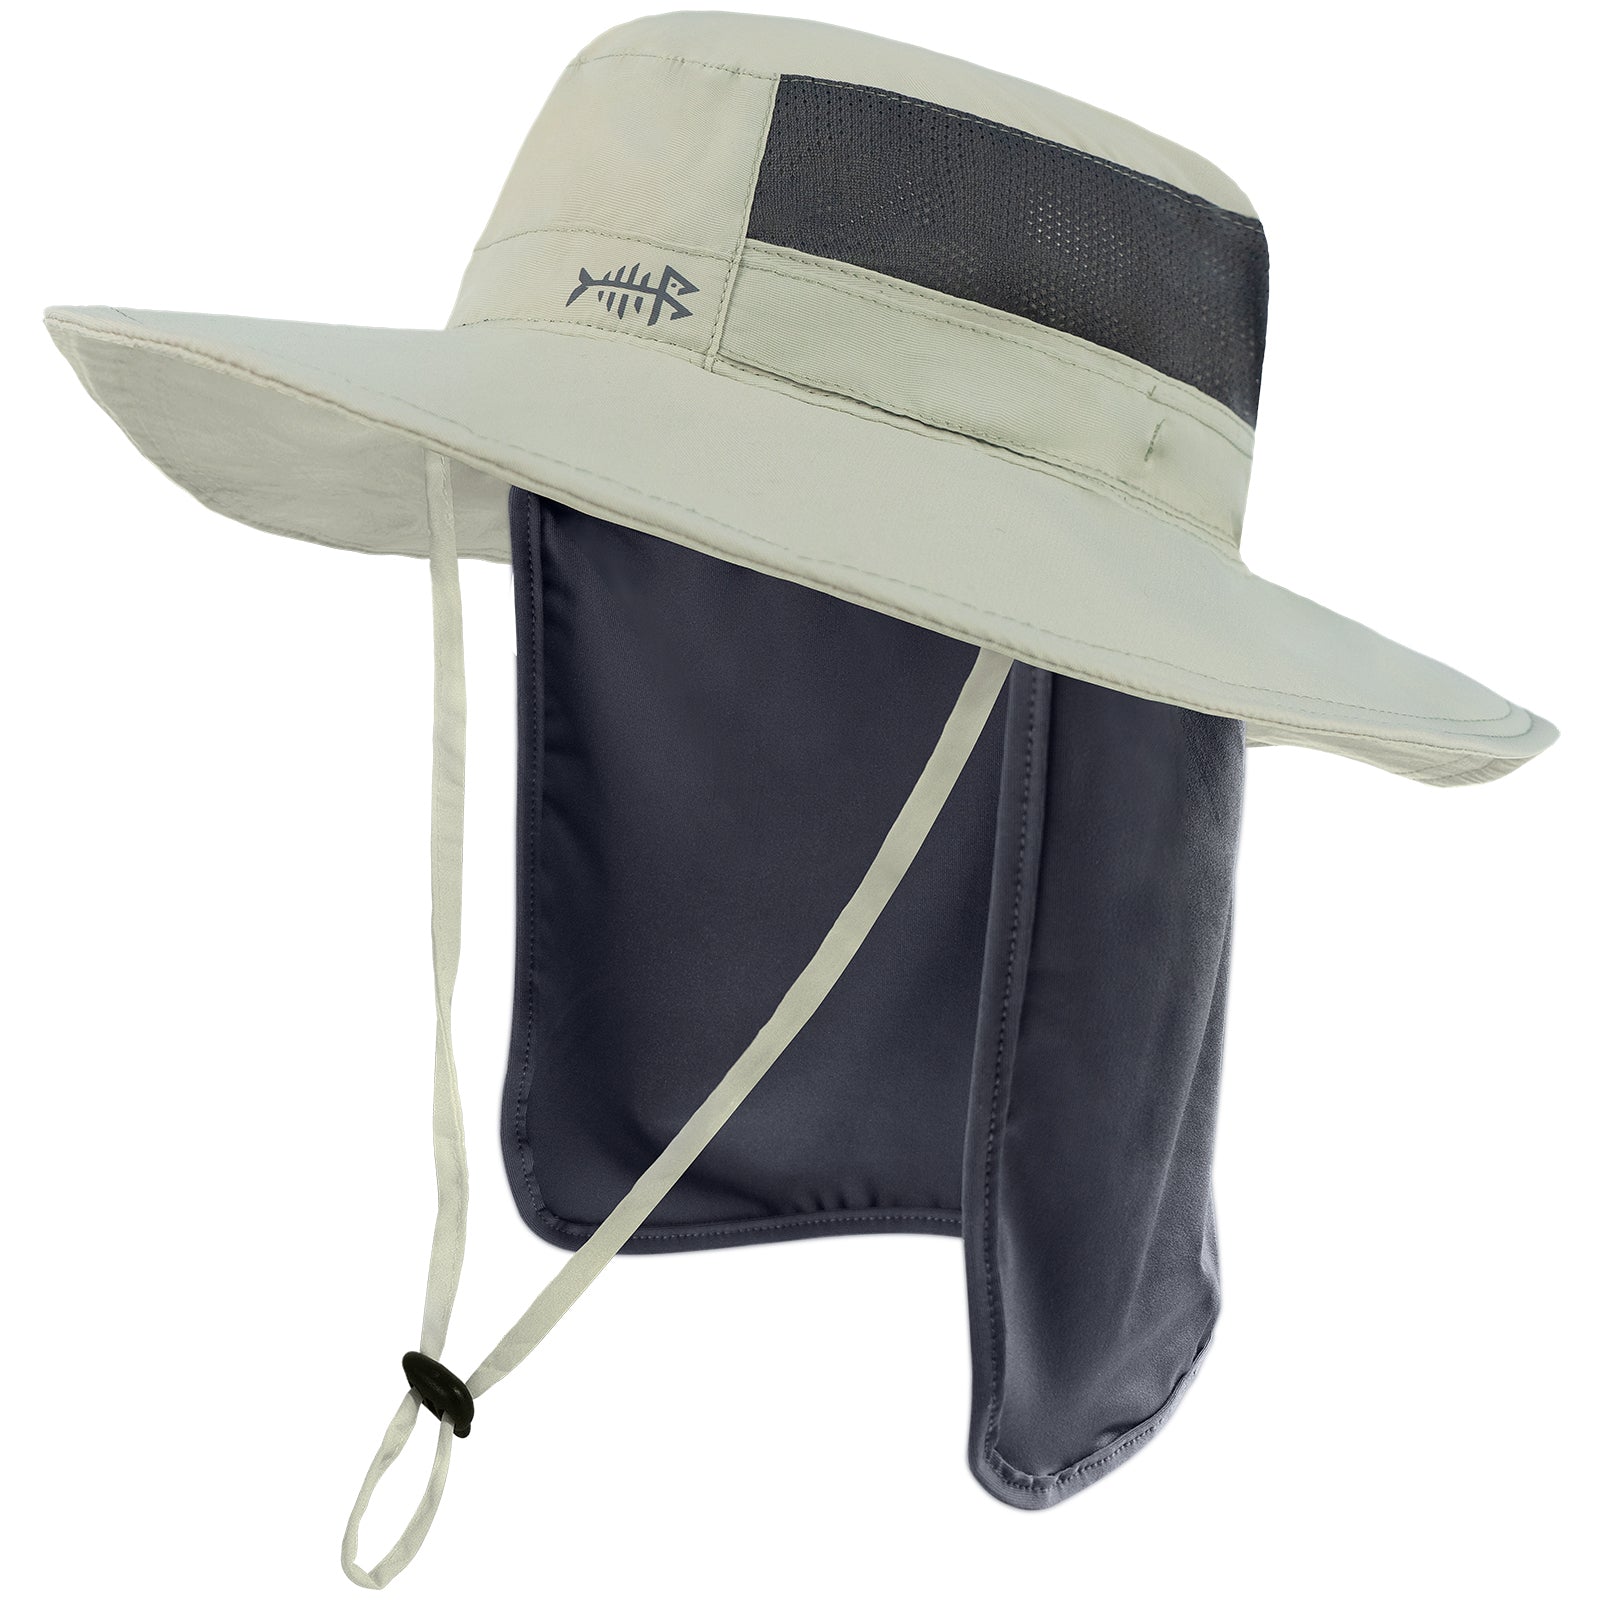  Men Women Outdoor Bucket Hat UPF 50+ Adjustable